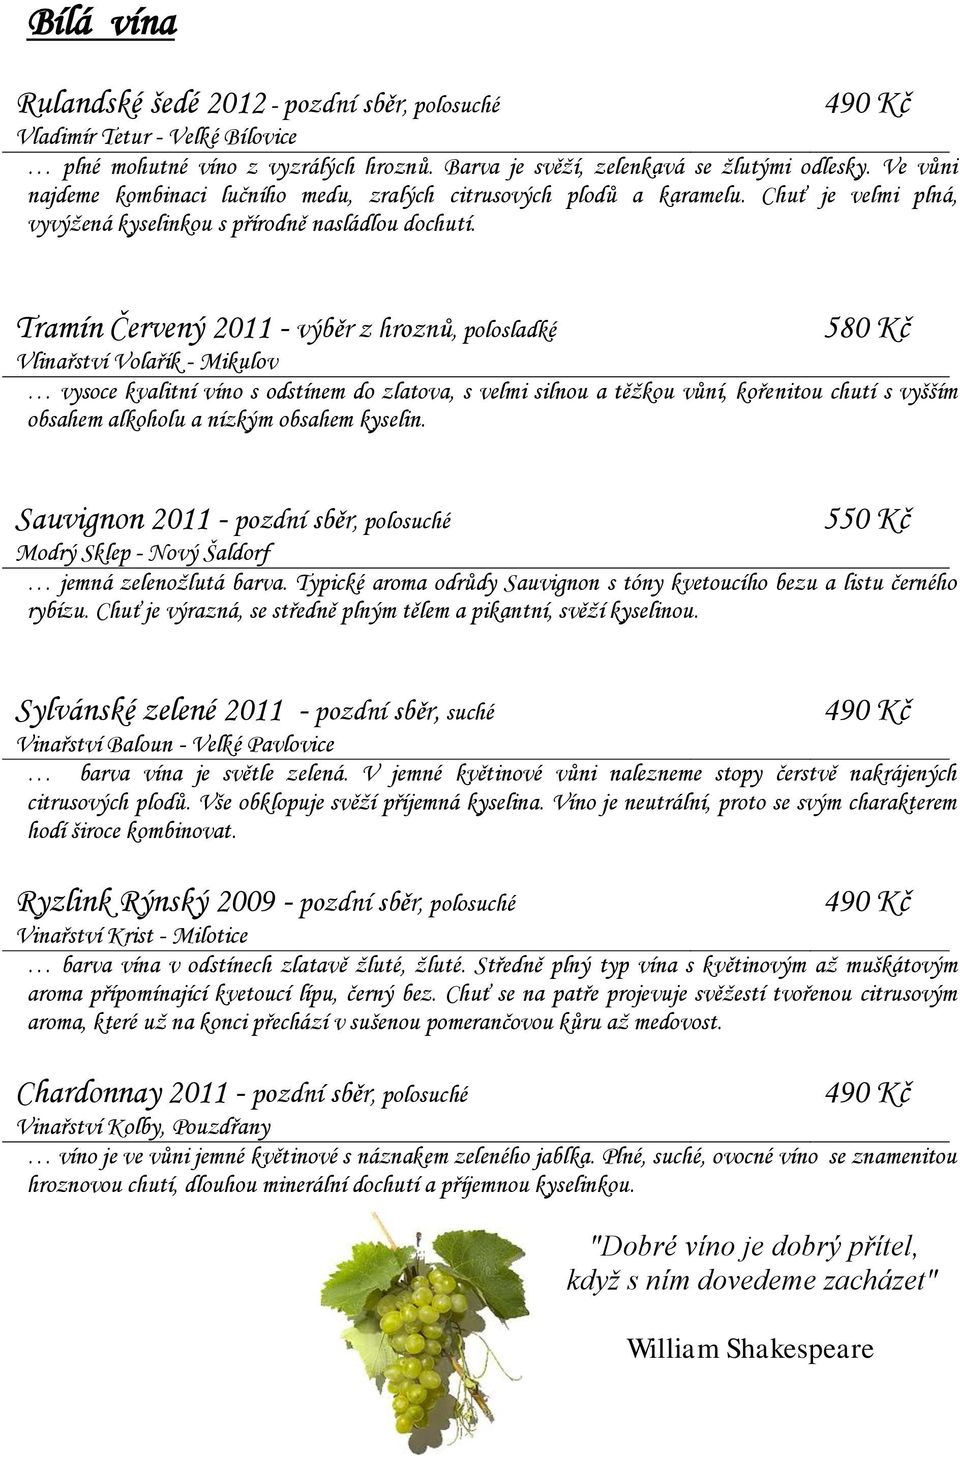 Tramín Červený 2011 - výběr z hroznů, polosladké 580 Kč Vlinařství Volařík - Mikulov vysoce kvalitní víno s odstínem do zlatova, s velmi silnou a těžkou vůní, kořenitou chutí s vyšším obsahem